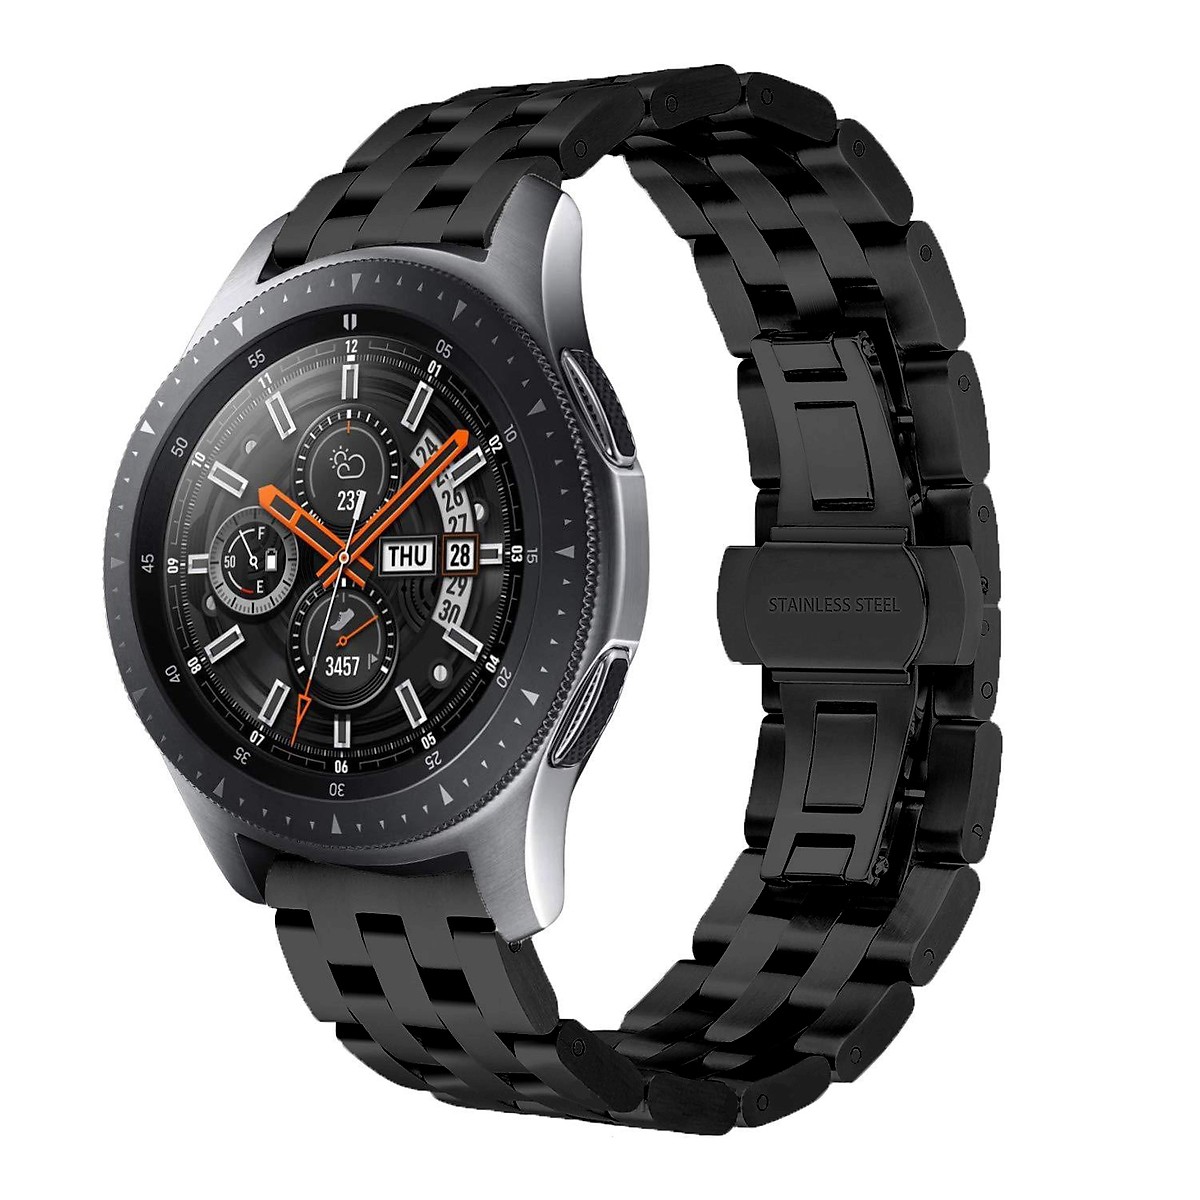 Dây Thép Steel cho đồng hồ Galaxy Watch Active 2, Galaxy Watch Active, Galaxy Watch 42